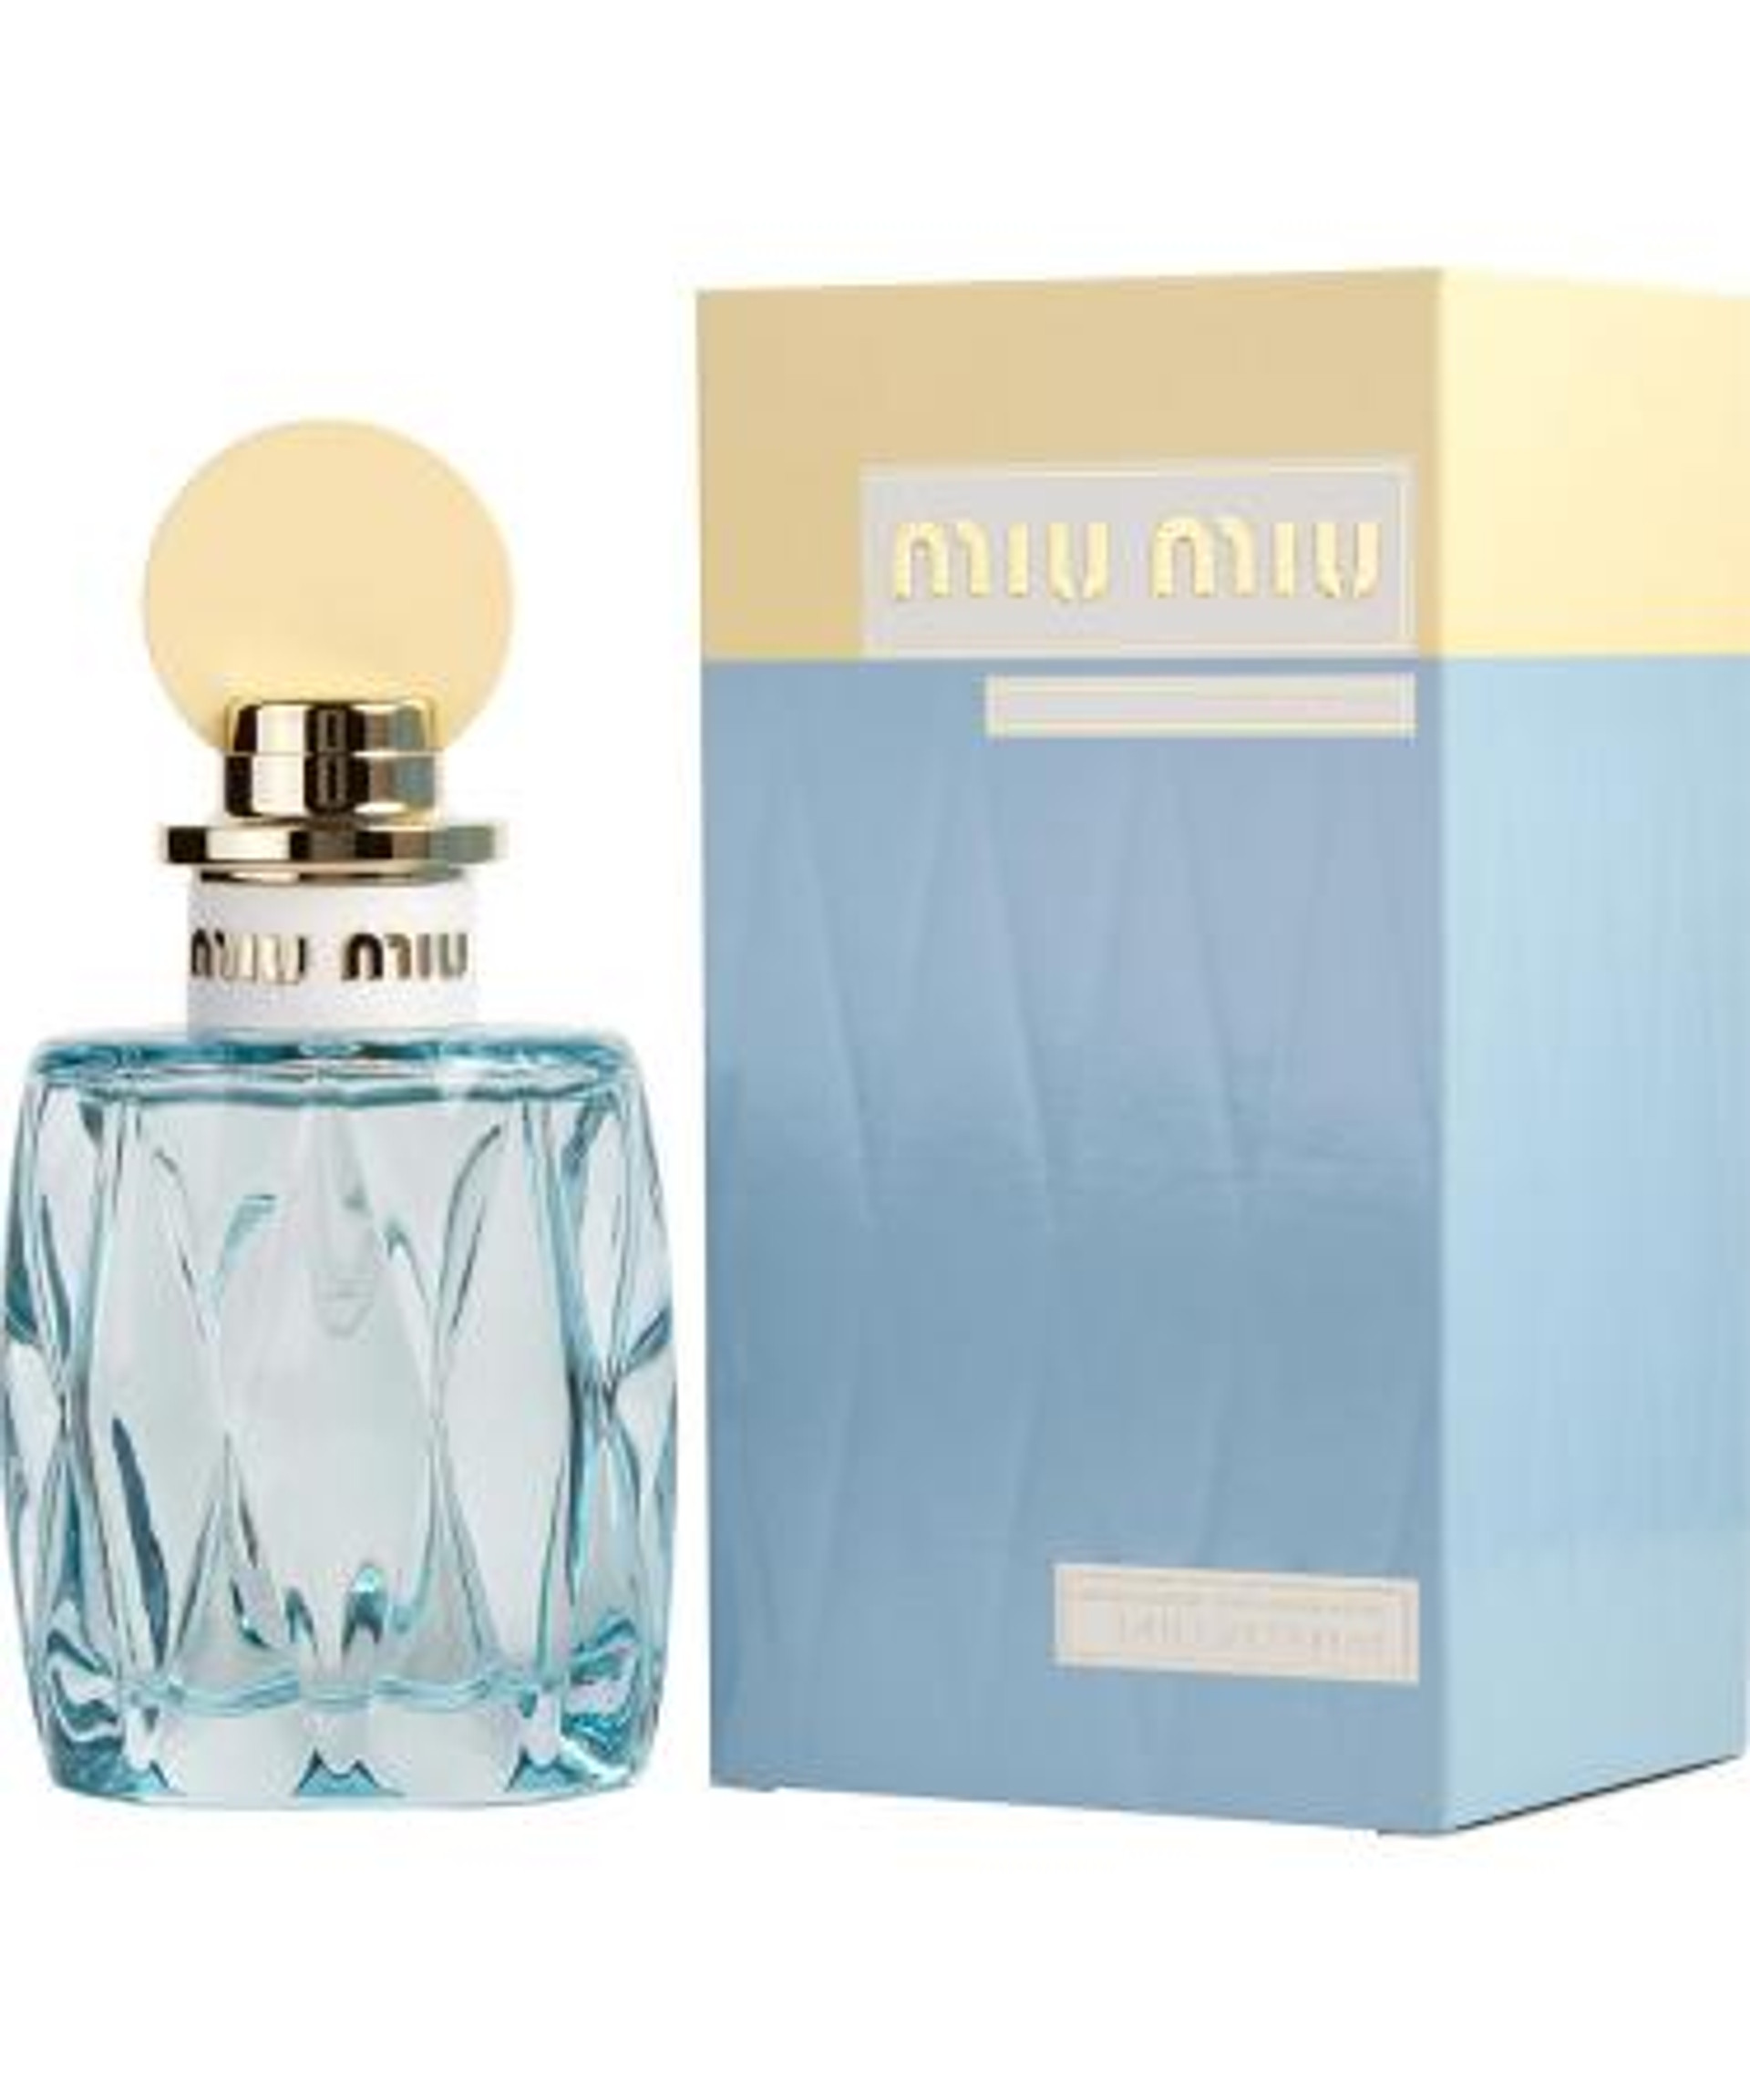 MIU MIU Products - HottPerfume.com